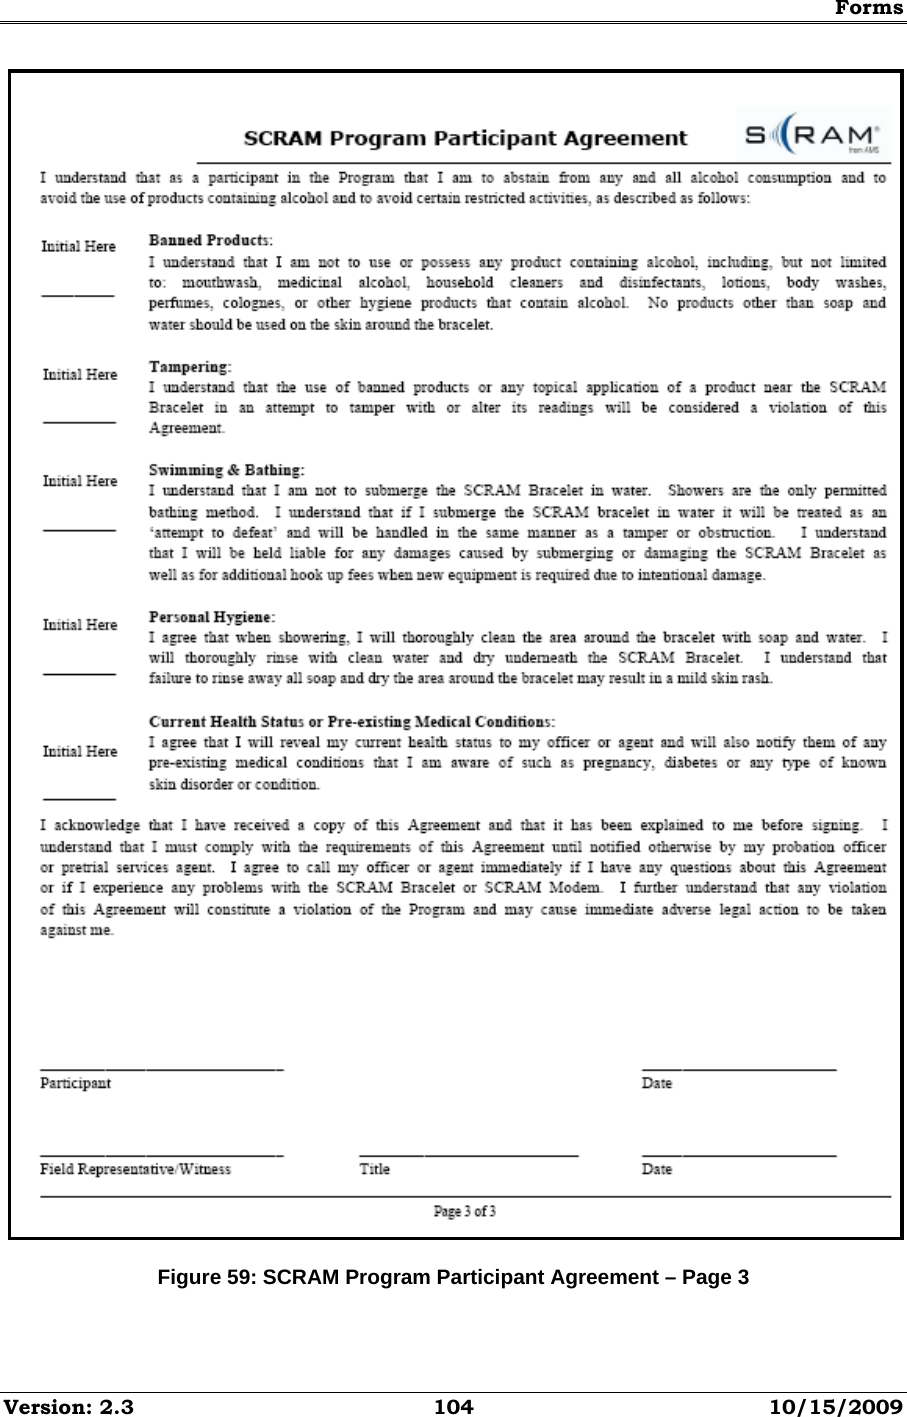 Forms Version: 2.3  104  10/15/2009  Figure 59: SCRAM Program Participant Agreement – Page 3 